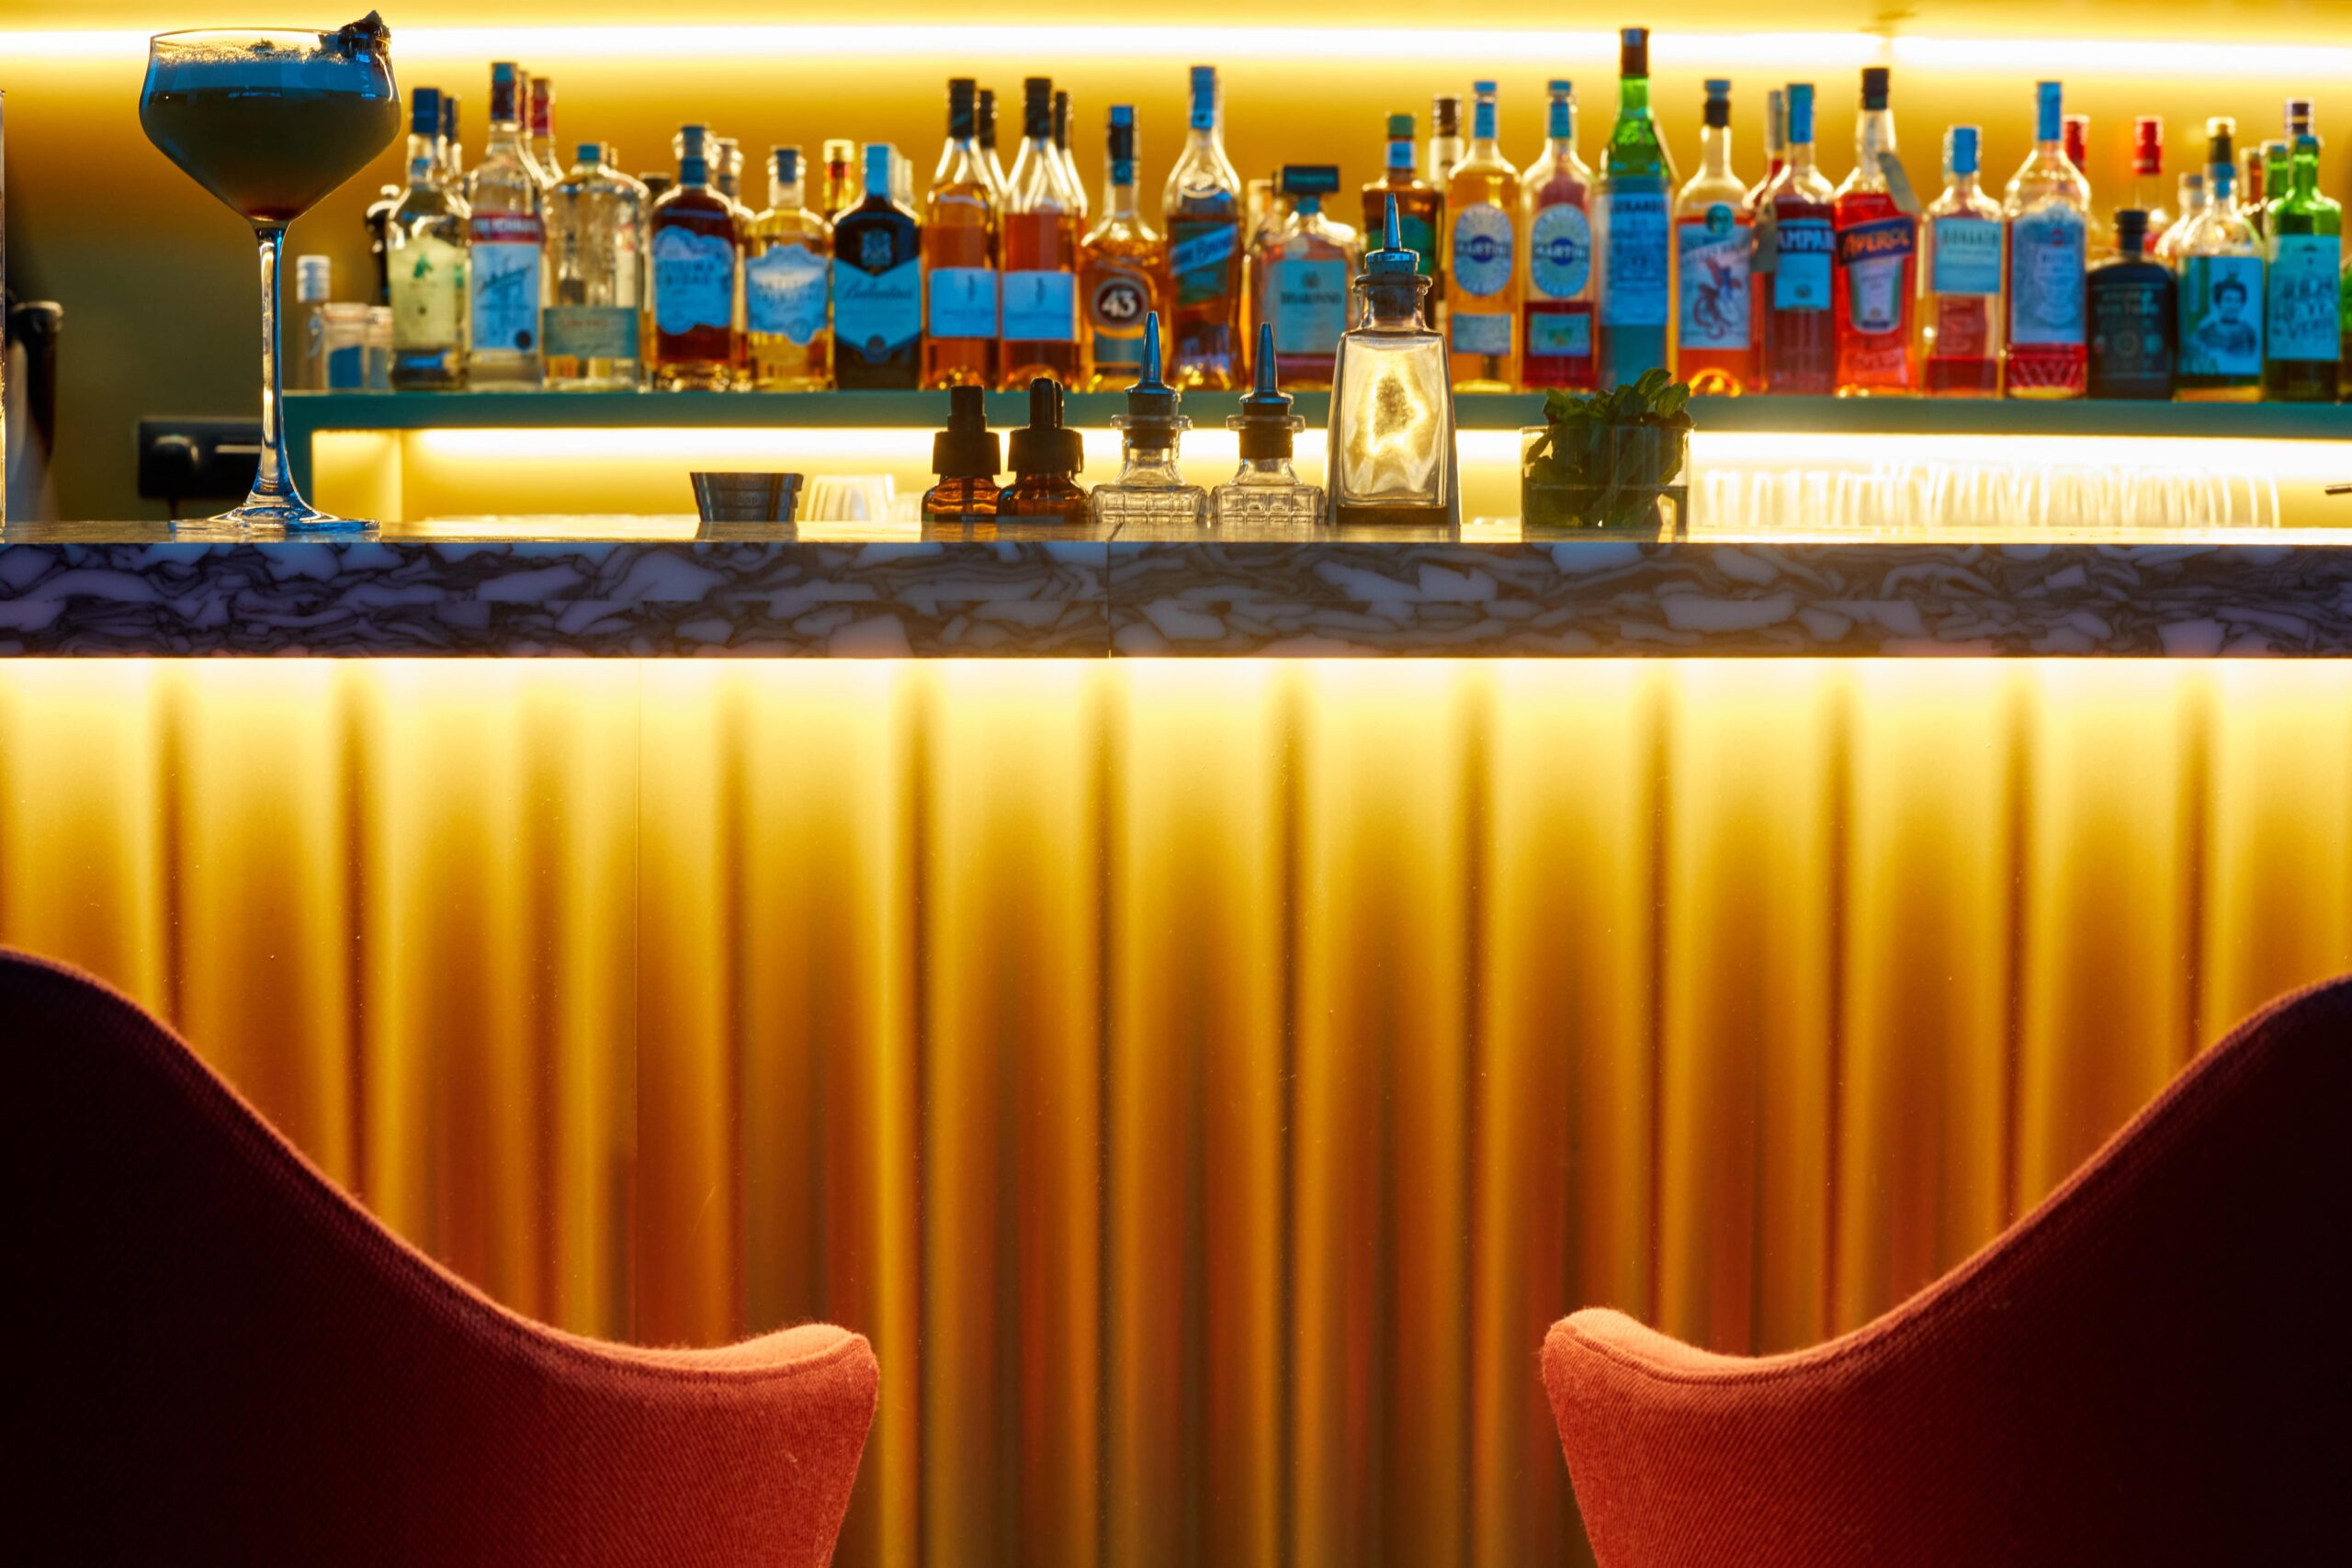 Sfeerafbeelding van de bar met op de voorgrond twee barkrukken en de bar op de achtergrond met veel flessen drank en een cocktail op de bar.